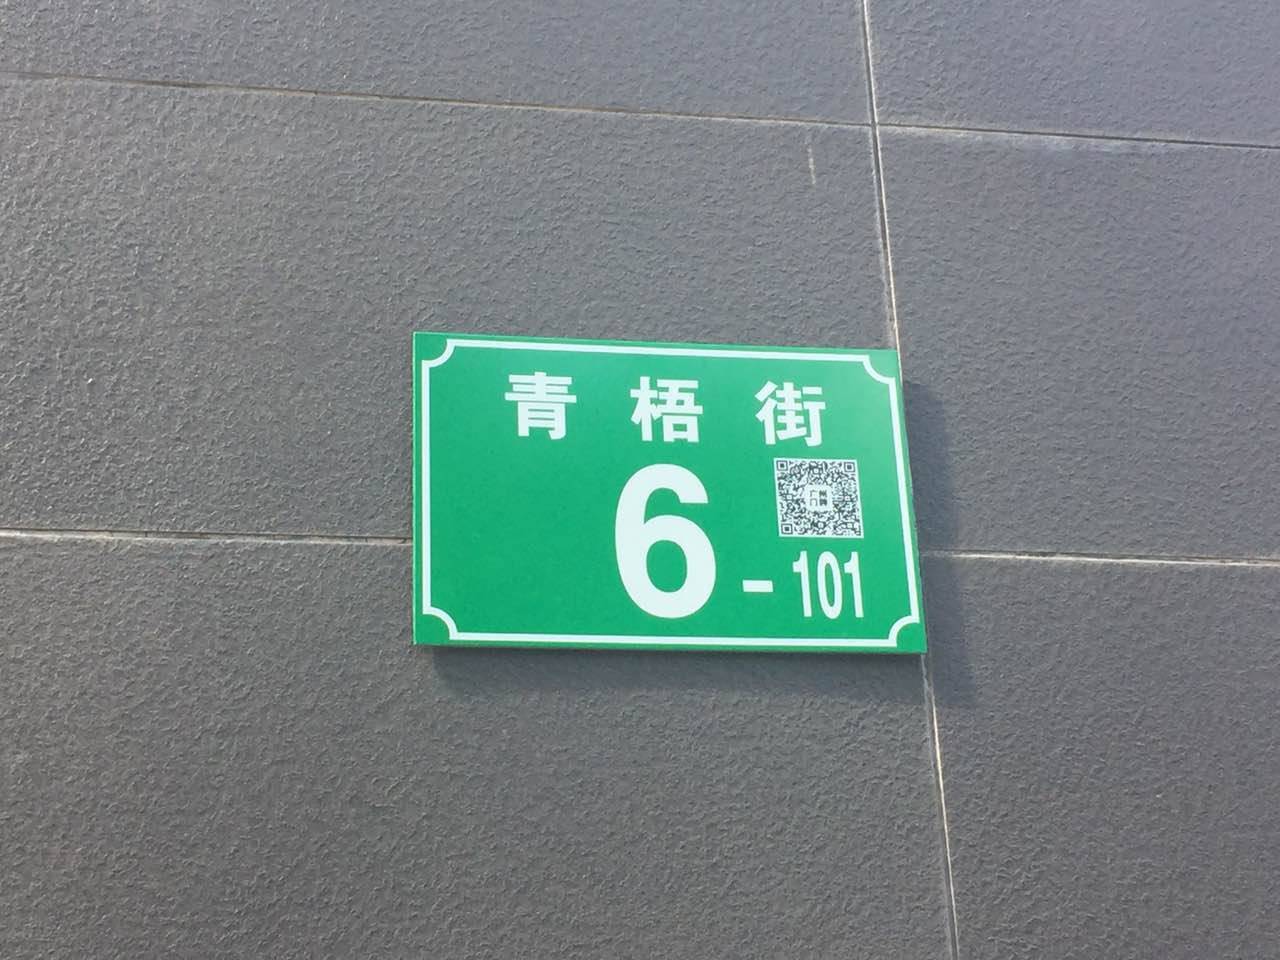 二维码门牌来啦!广州所有门牌将更换为绿牌